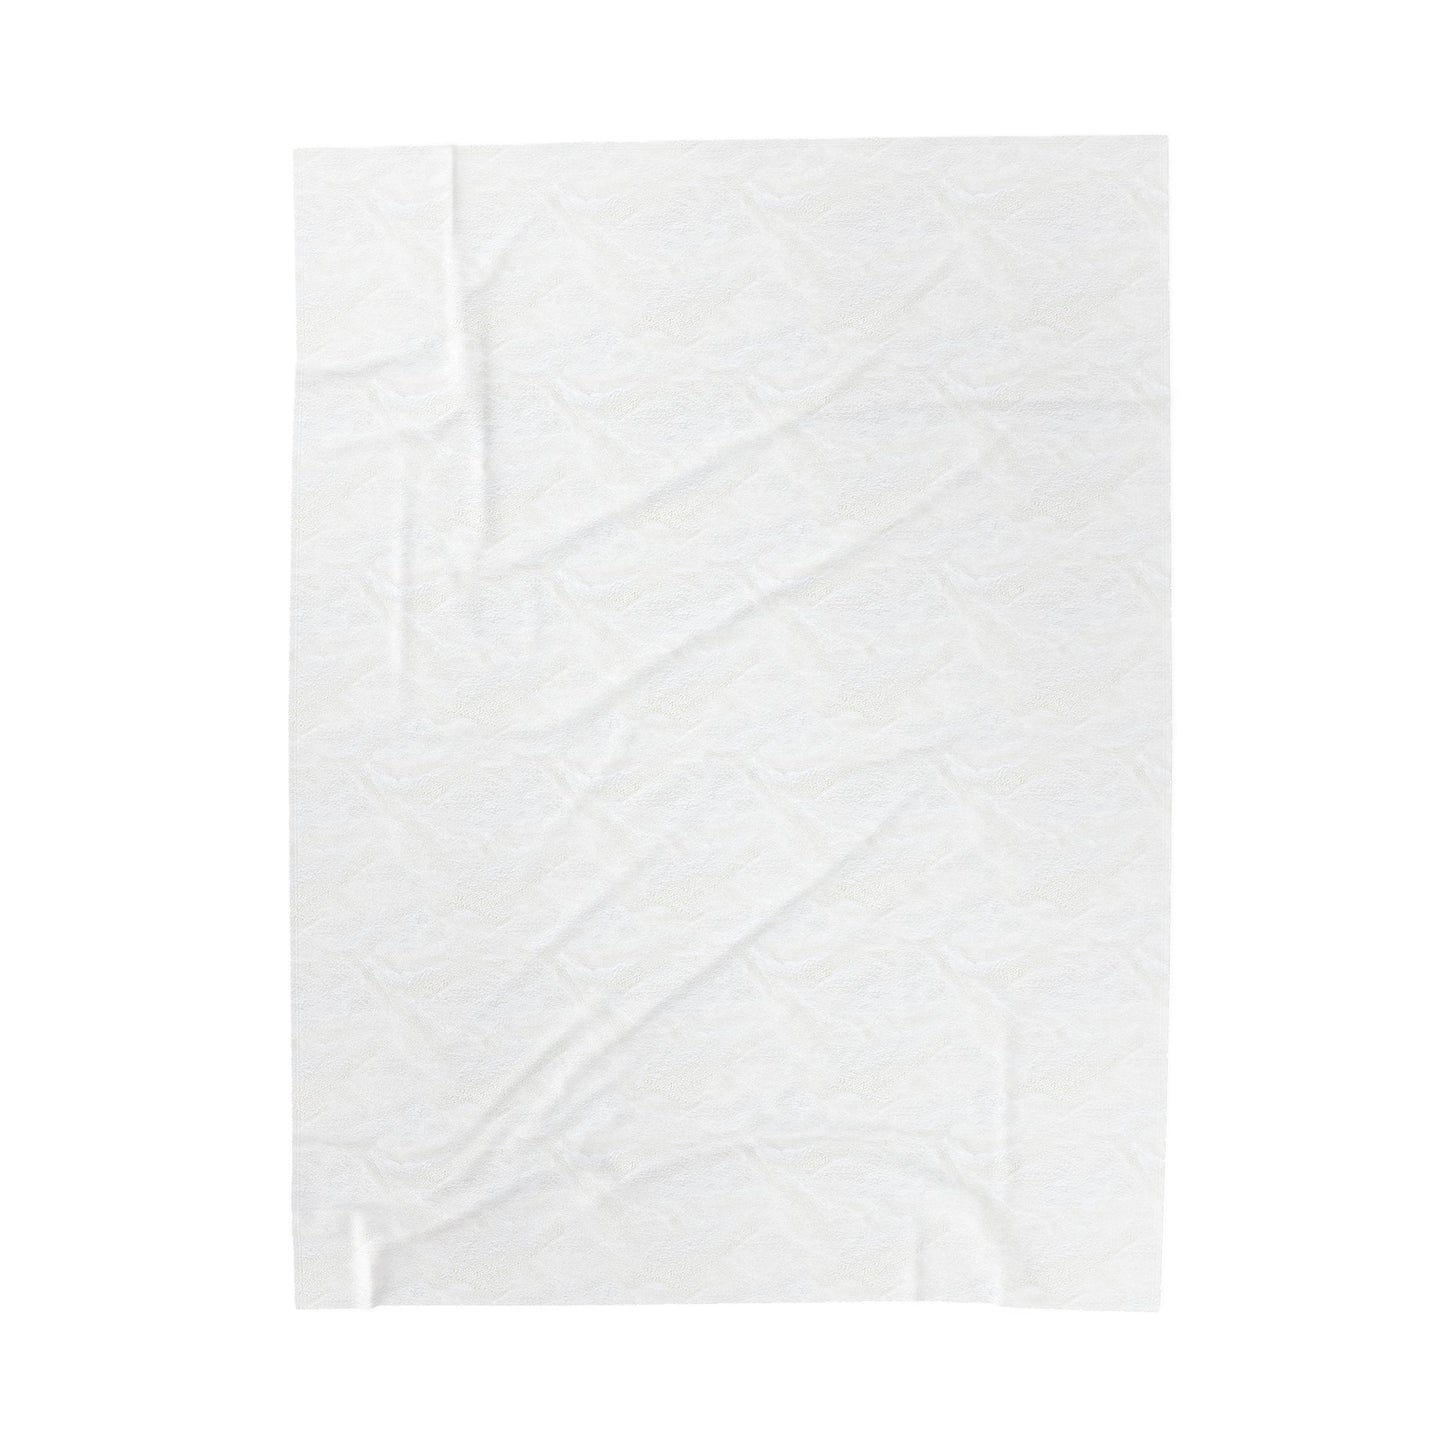 The Avant-gardist - Plush Blanket-Plush Blankets-Mr.Zao - Krazy Art Gallery